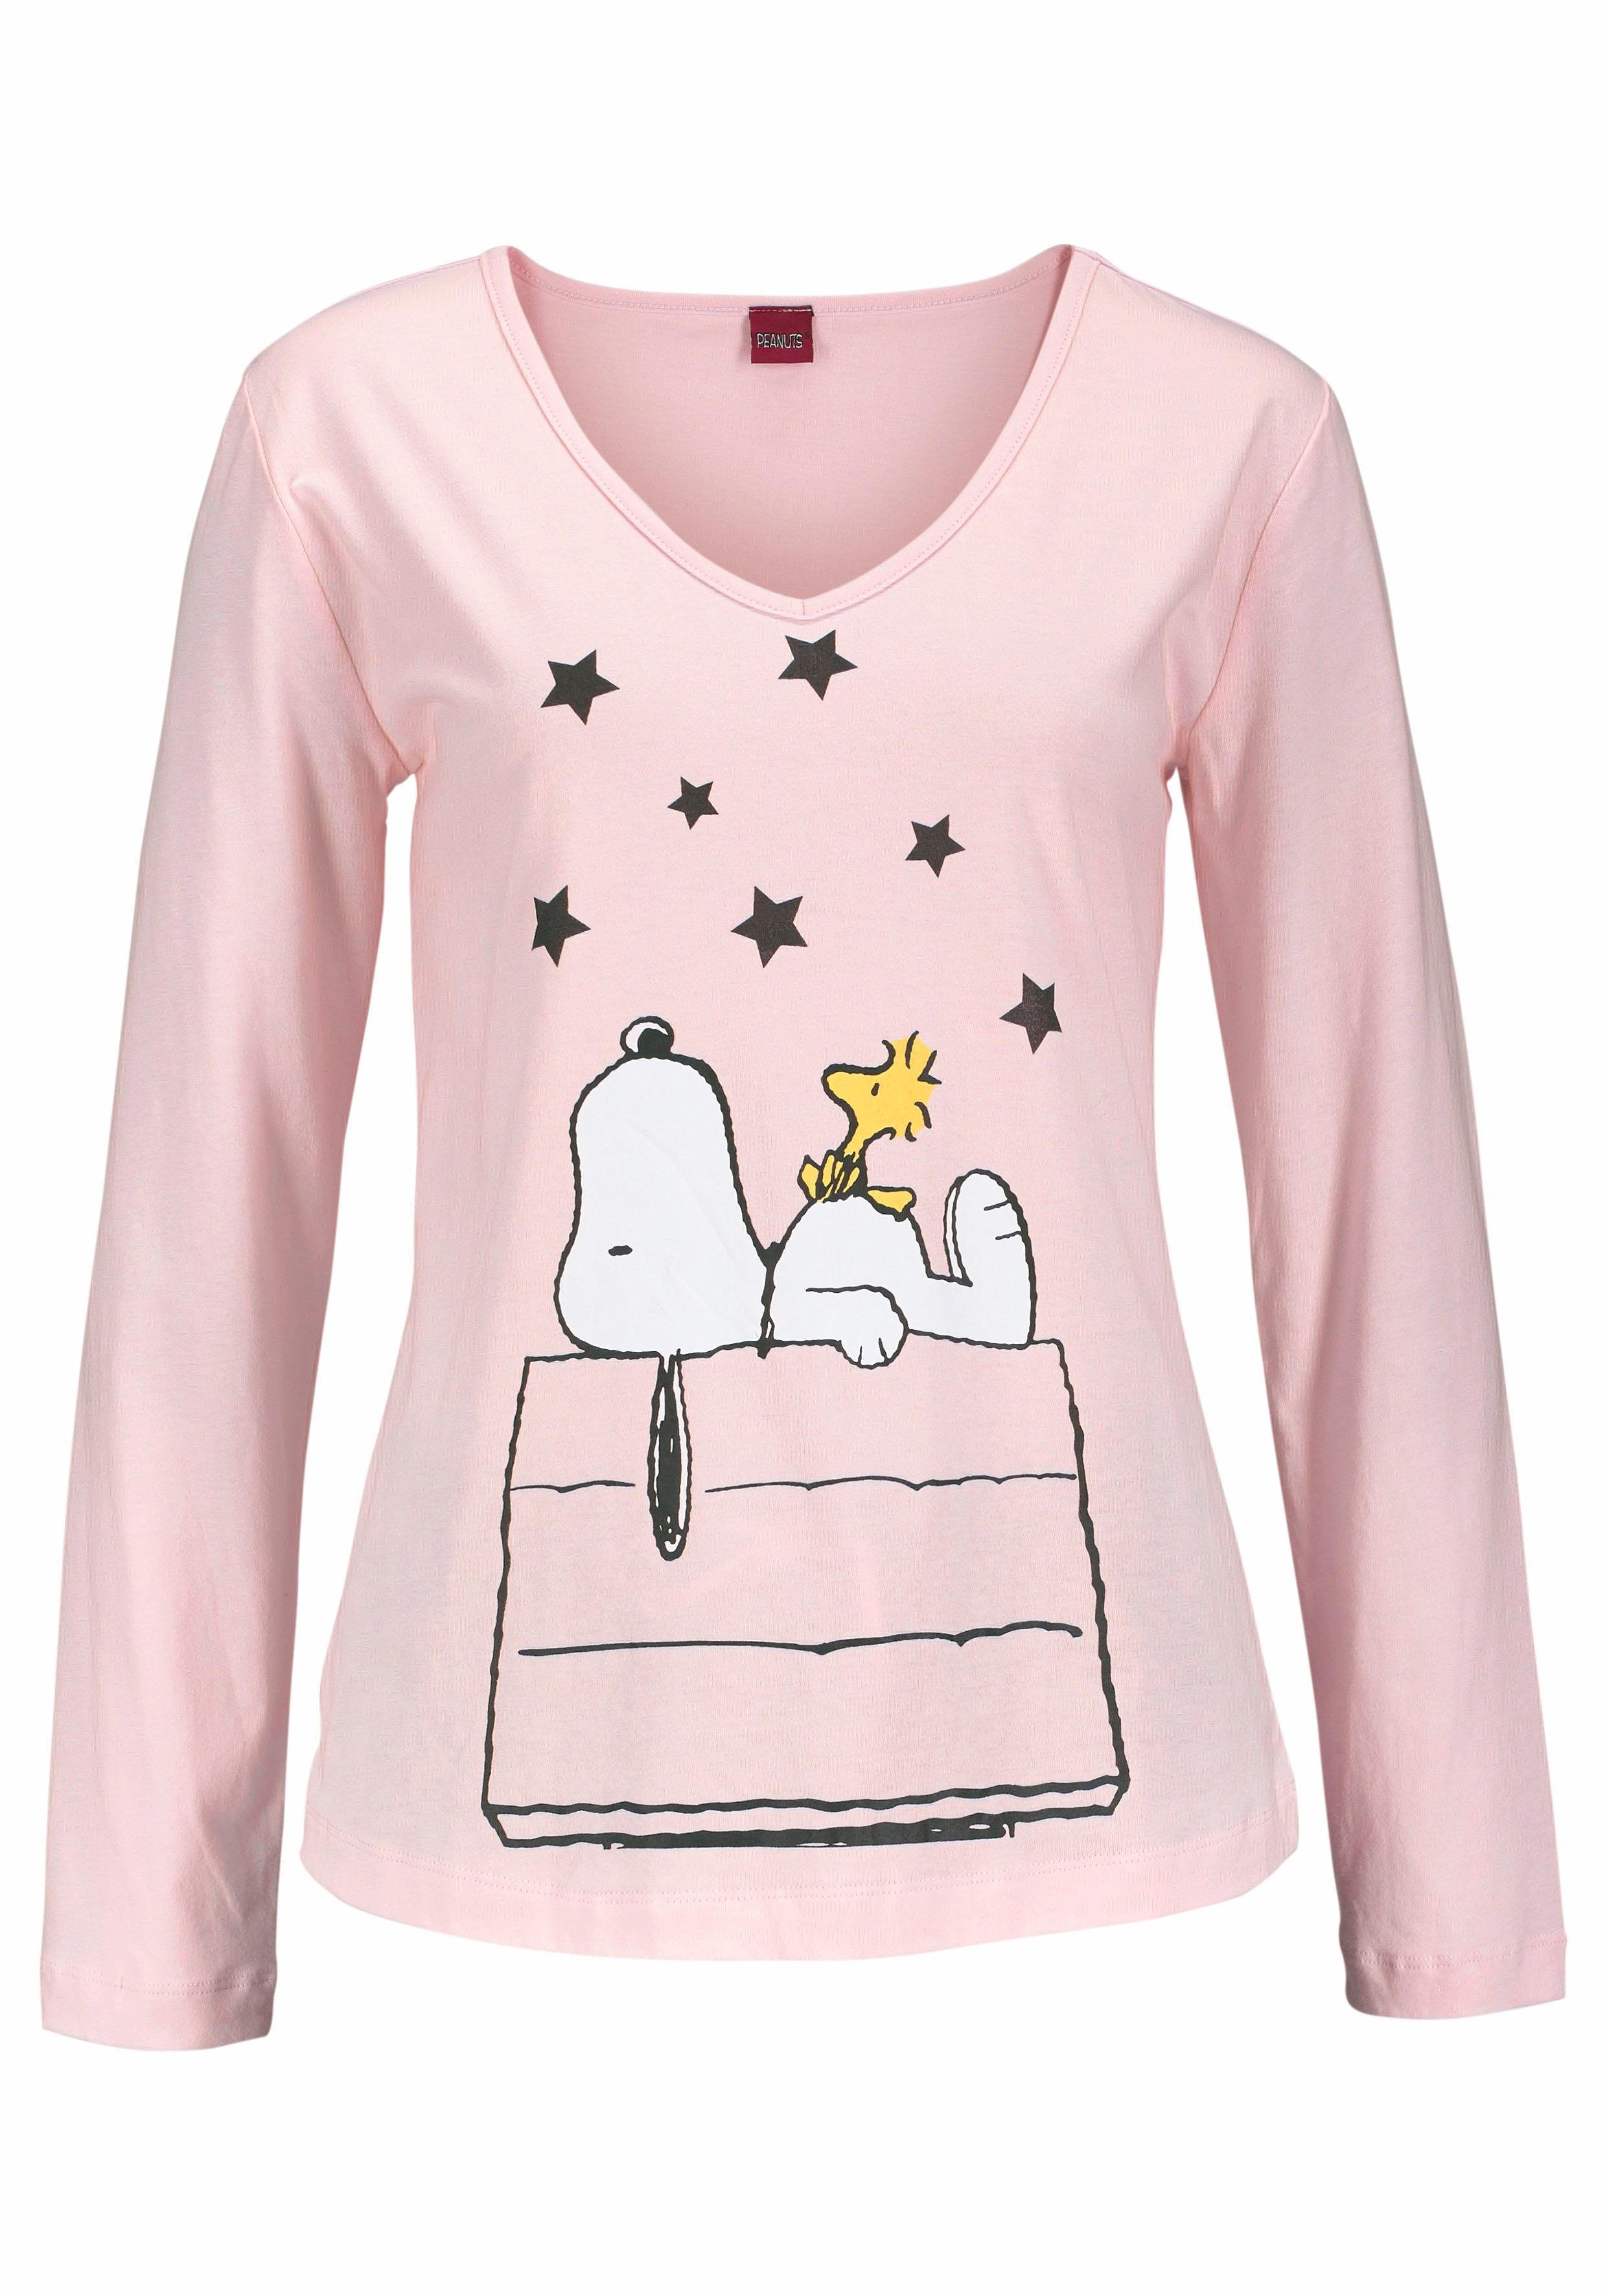 tlg., Snoopy-Design (2 Stück) langer 1 PEANUTS in niedlichen Pyjama im Form